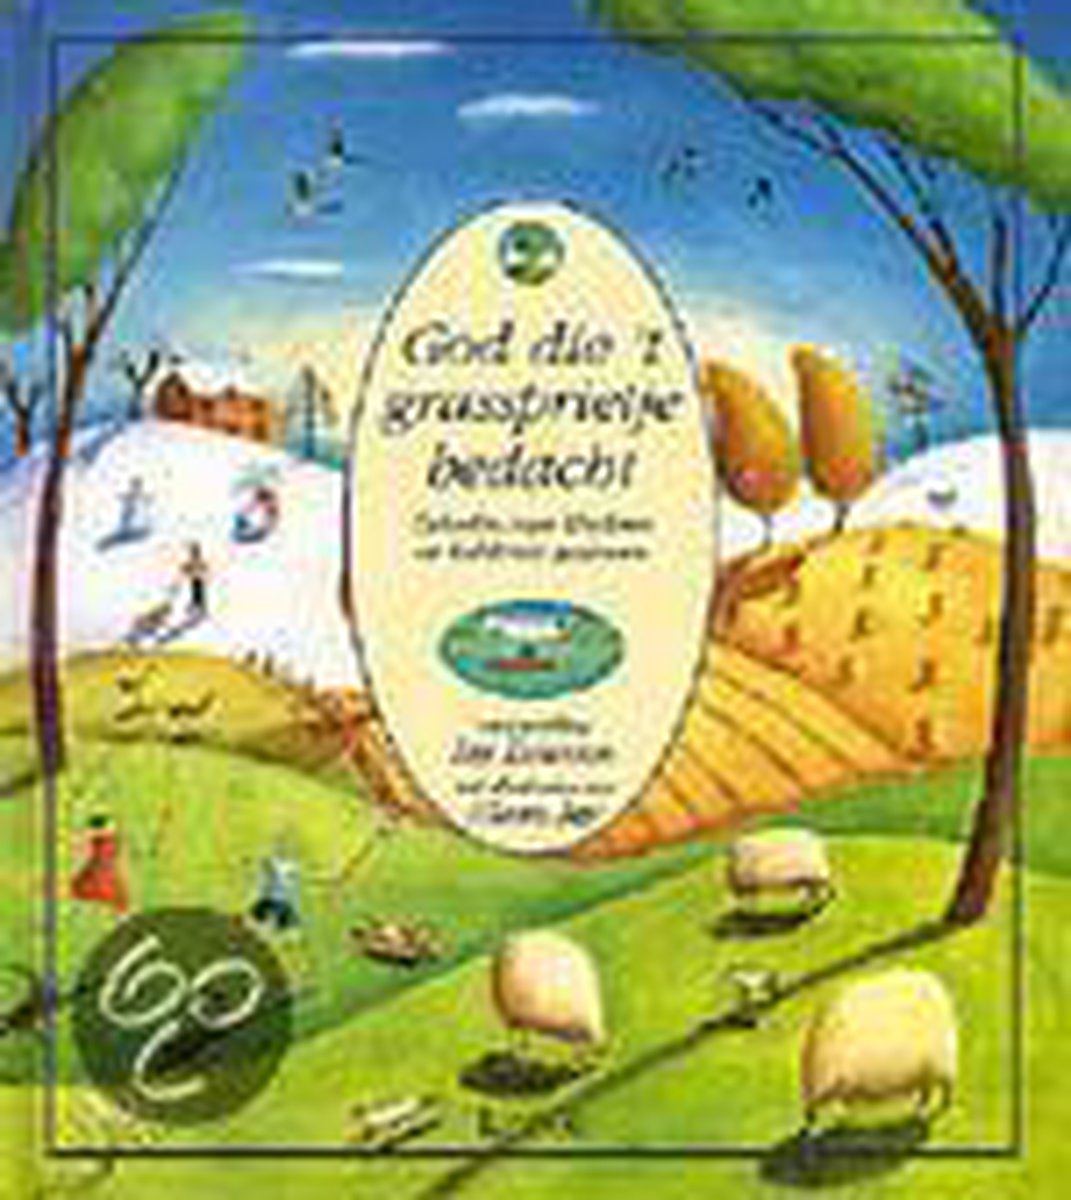 God Die Het Grassprietje Bedacht - Iny Driessen